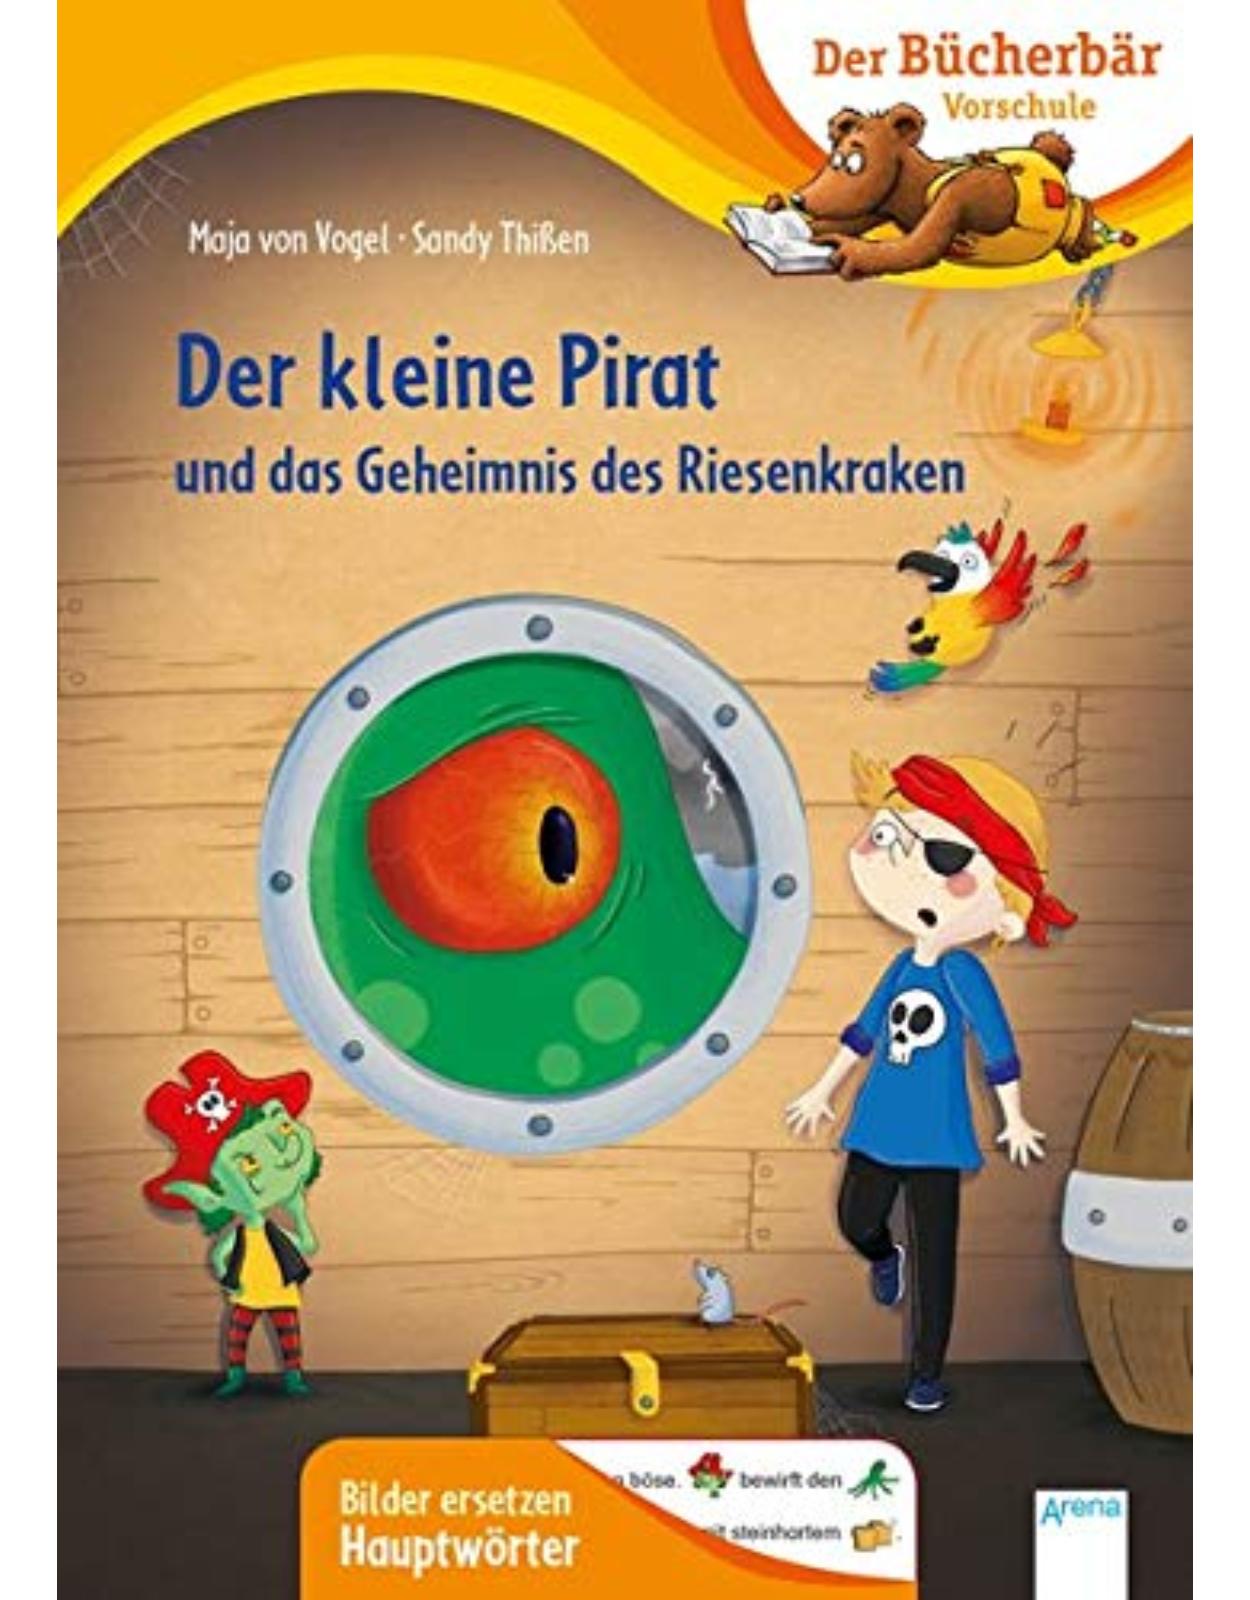 Der kleine Pirat und das Geheimnis des Riesenkraken: Der Bucherbar: Vorschule. Bilder ersetzen Namenworter